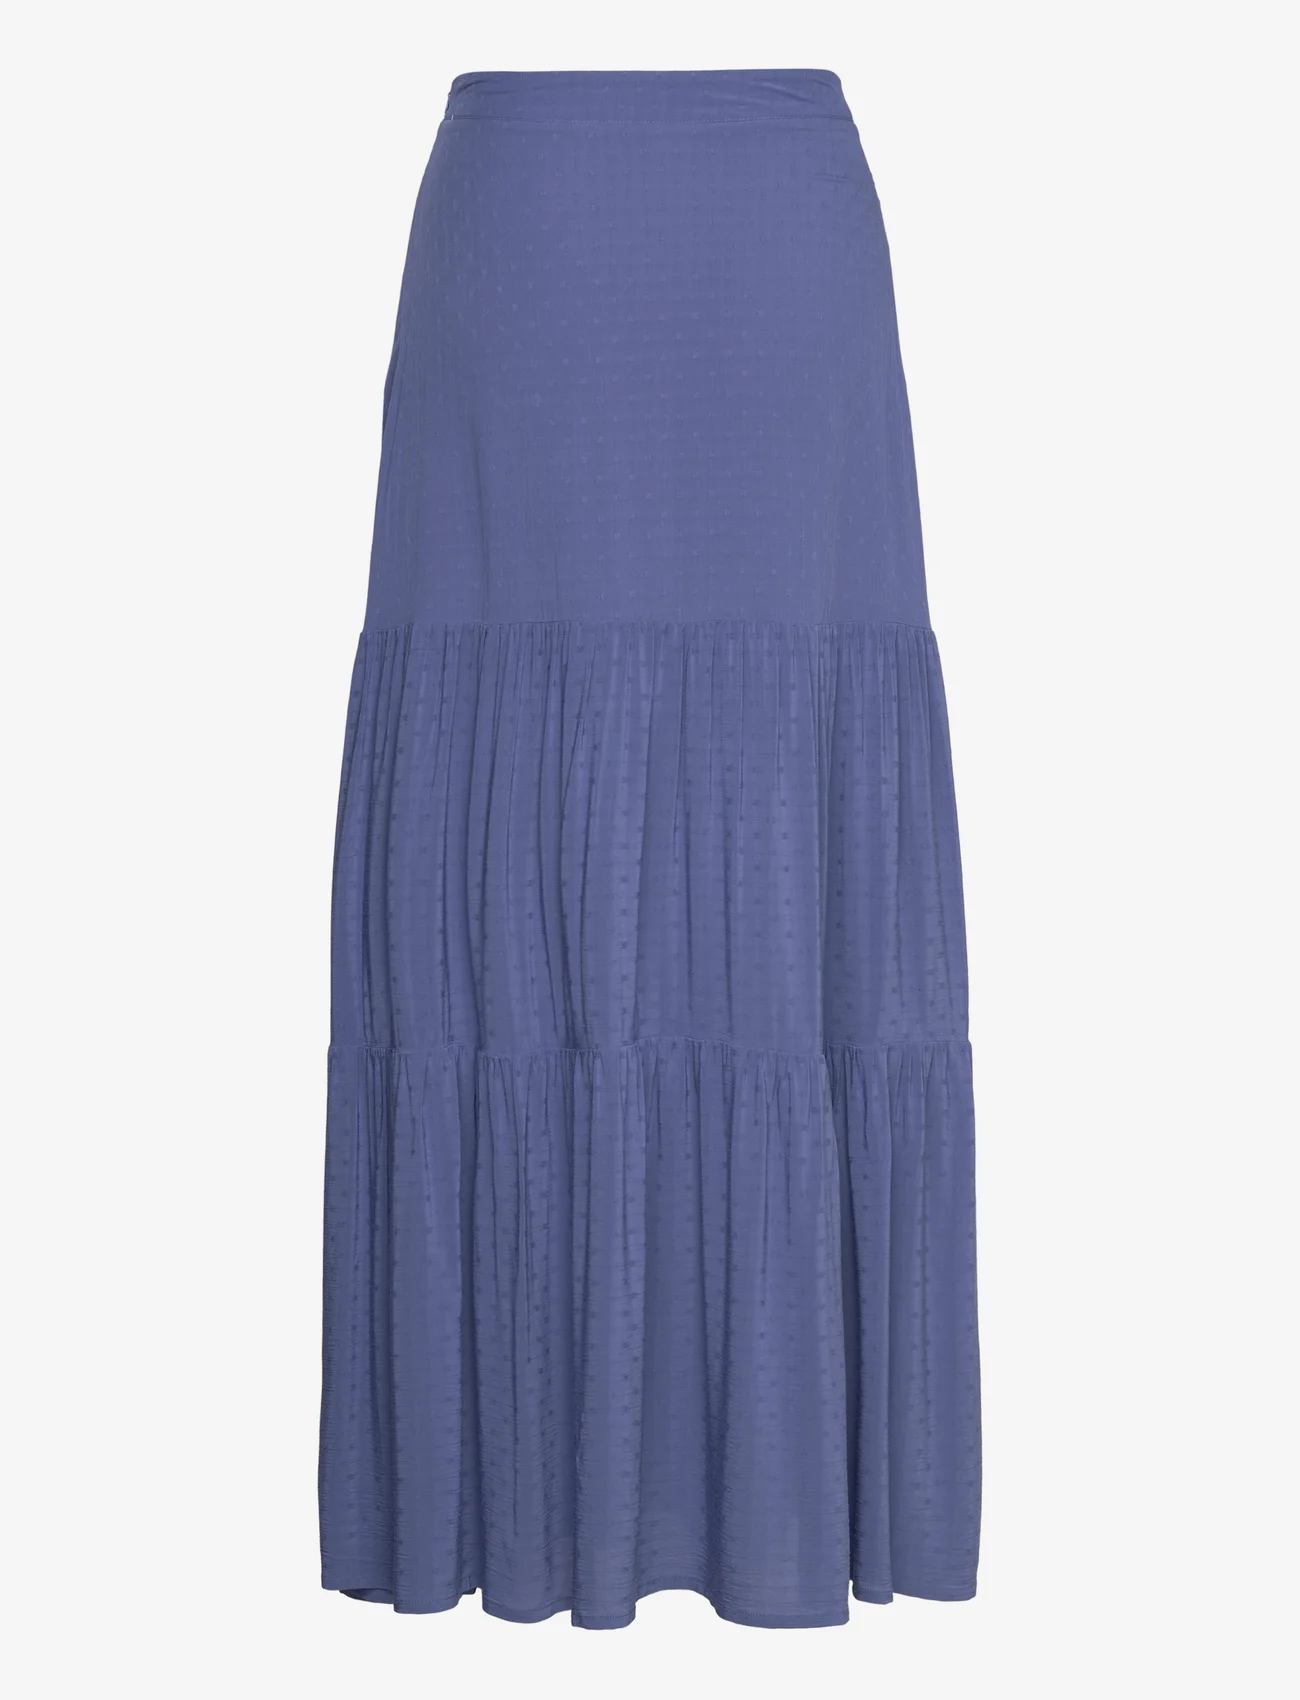 Lexington Clothing - Melissa Dobby Viscose Maxi Skirt - maxi nederdele - blue - 1